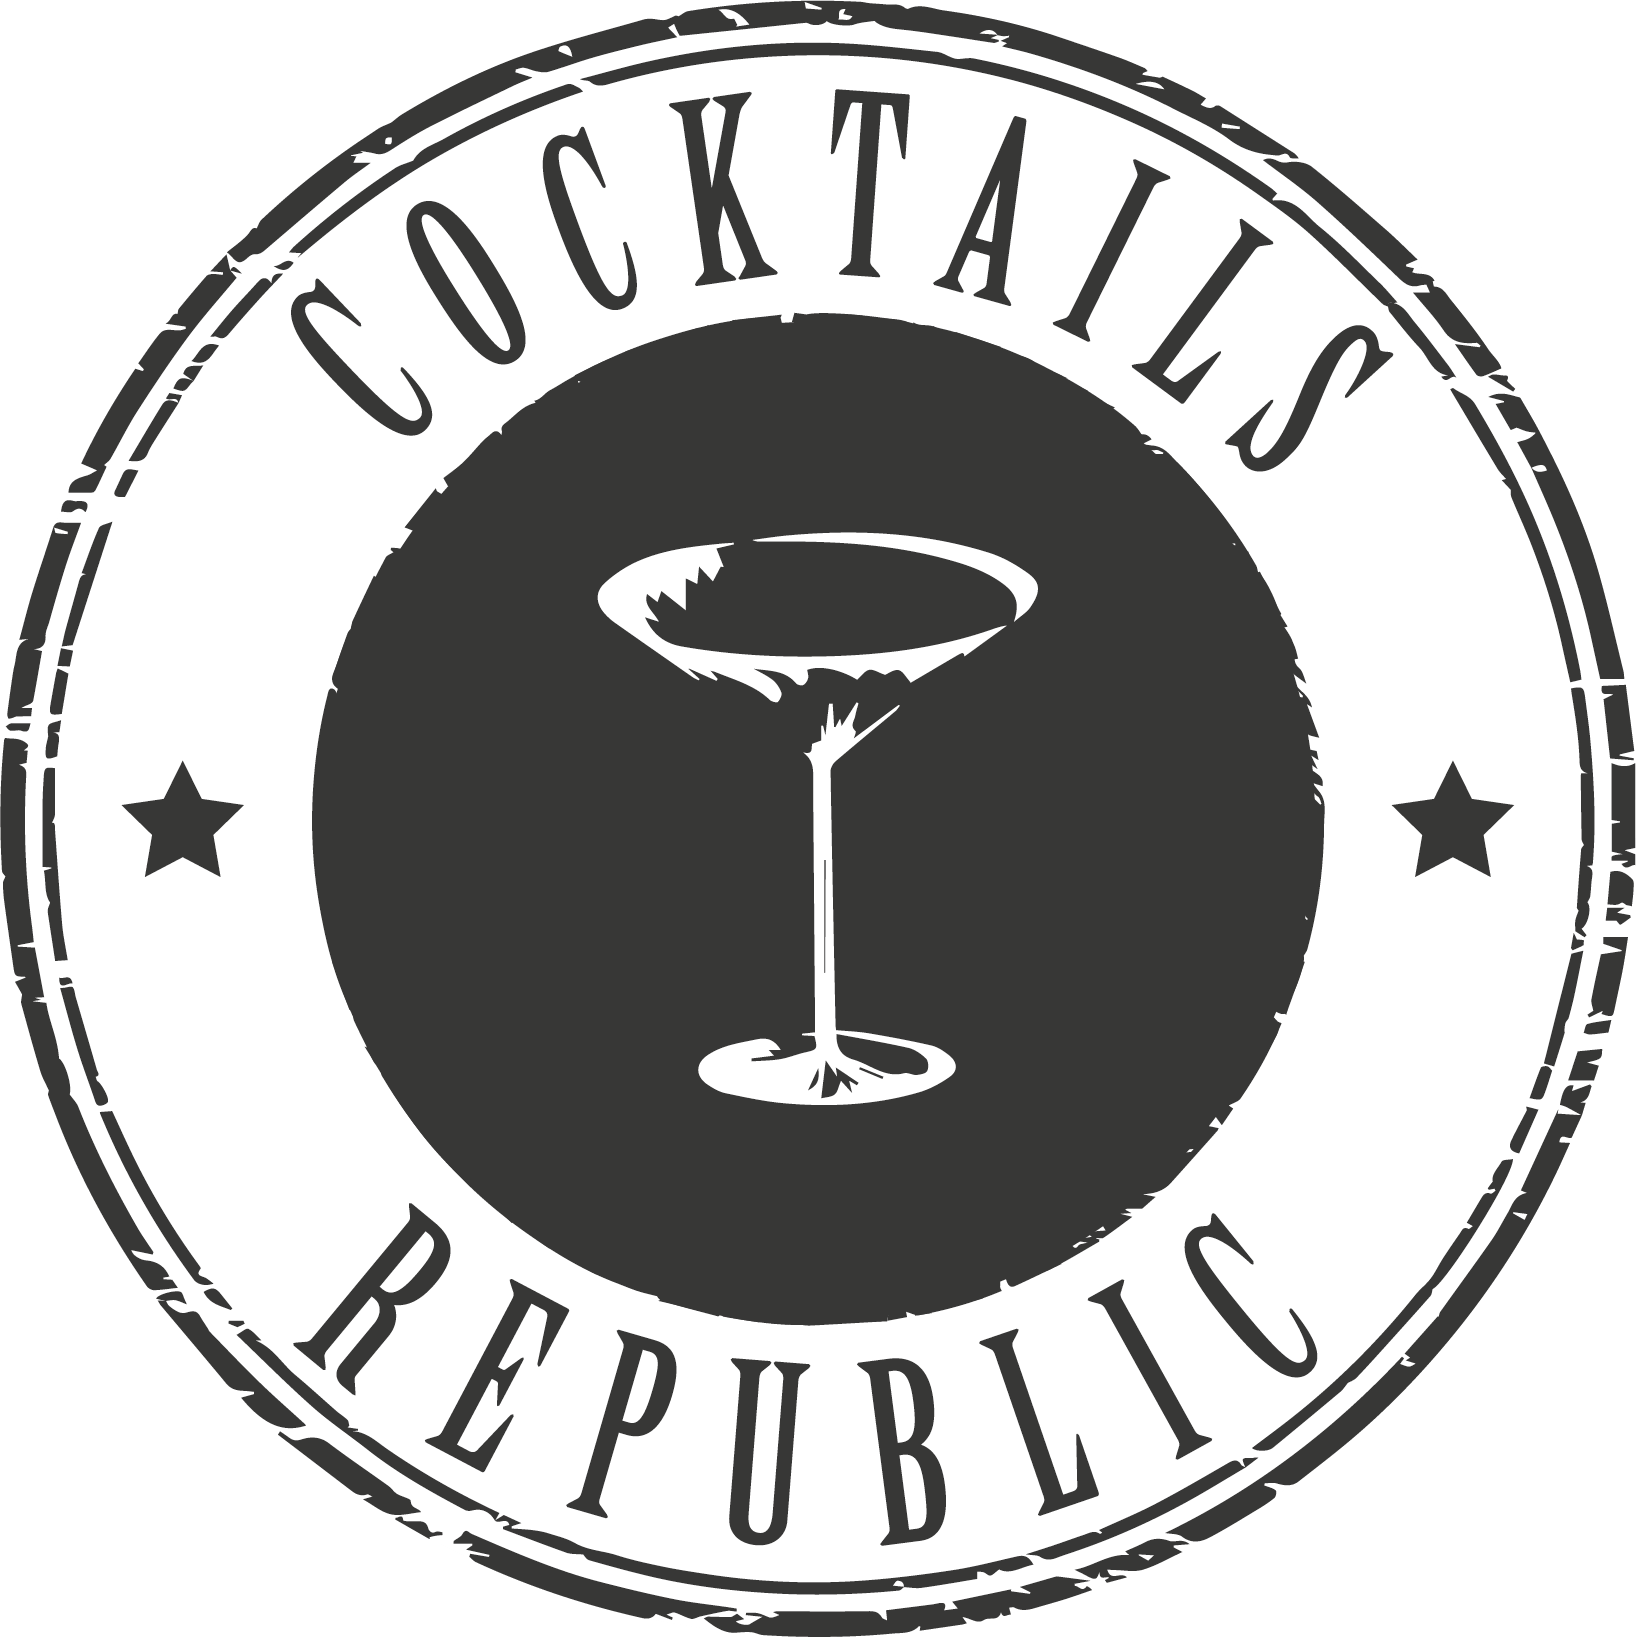 Cocktails Republic